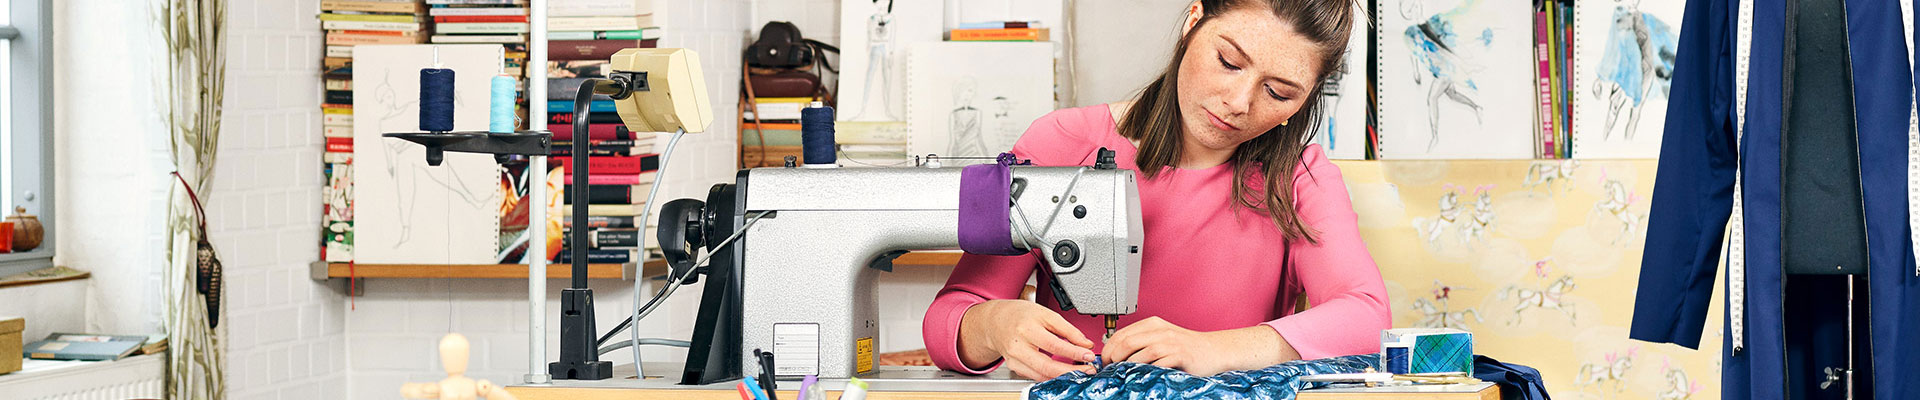 Eine junge Frau näht in einem Atelier an einer Nähmaschine.